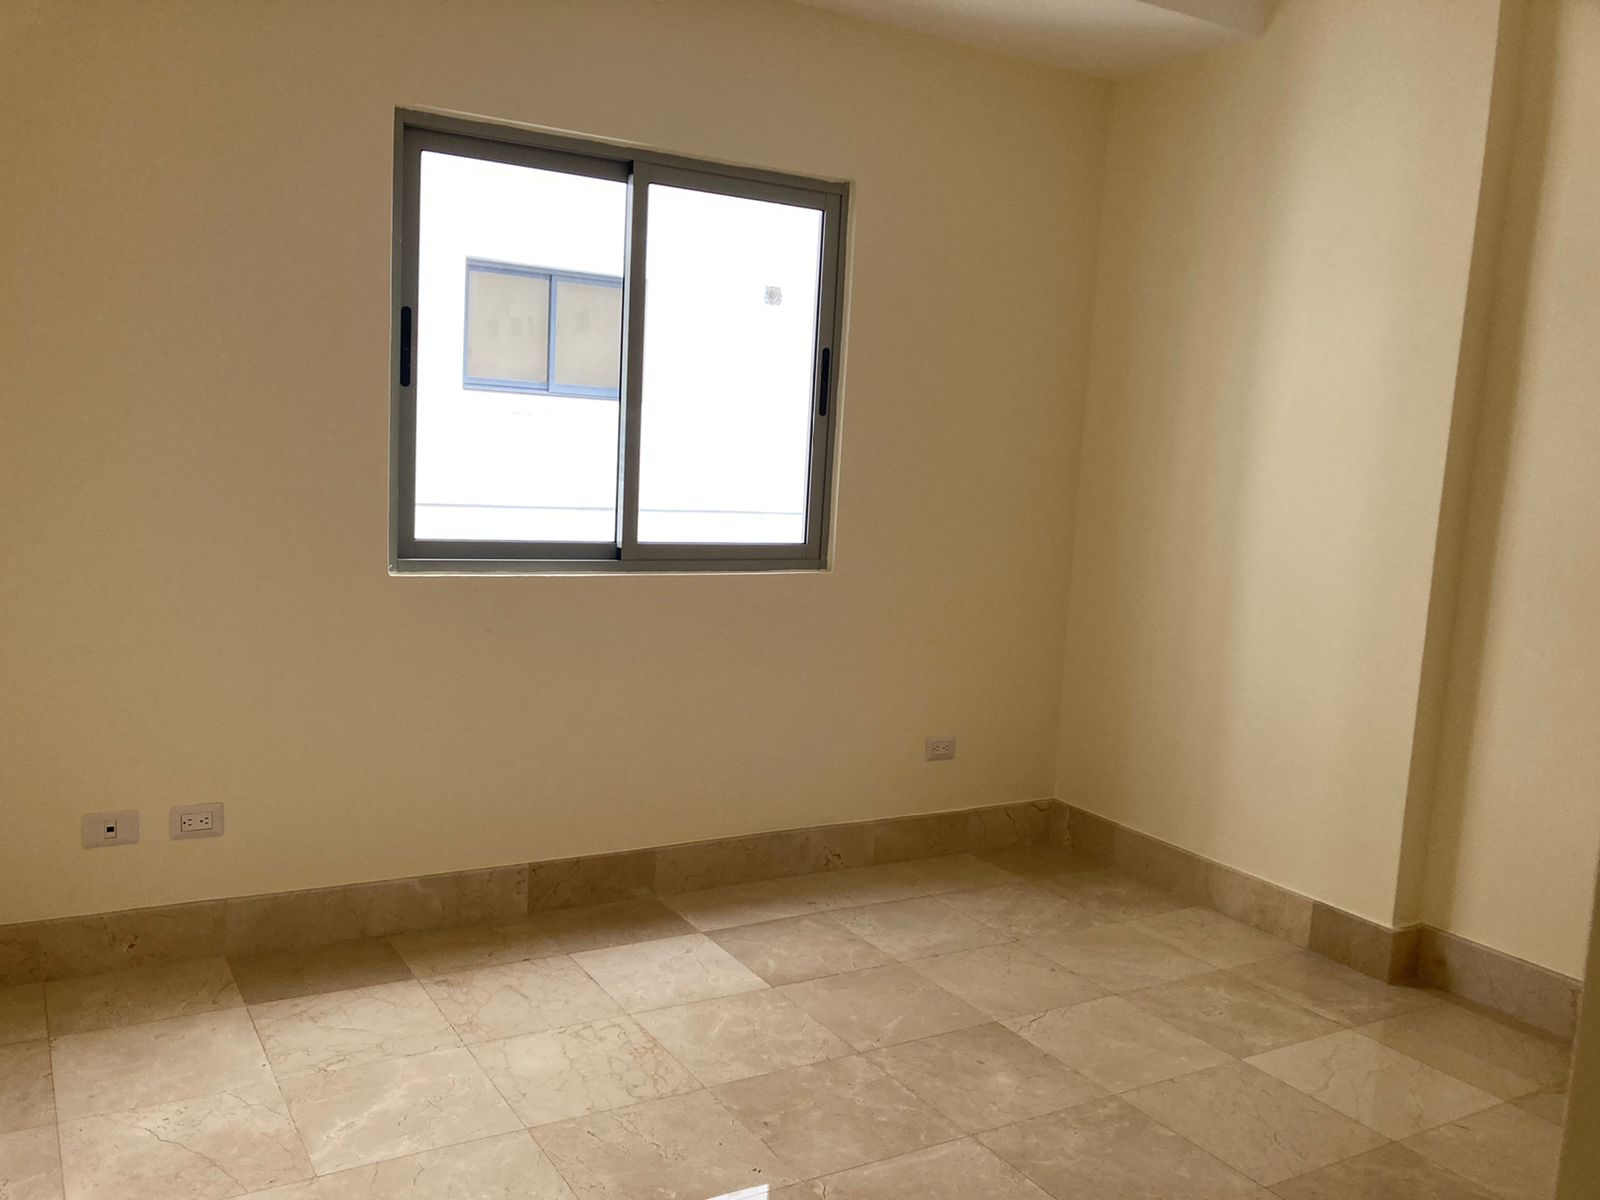 Apartamento con linea blanca de 3 habs en alquiler Piantini Foto 7165022-6.jpg